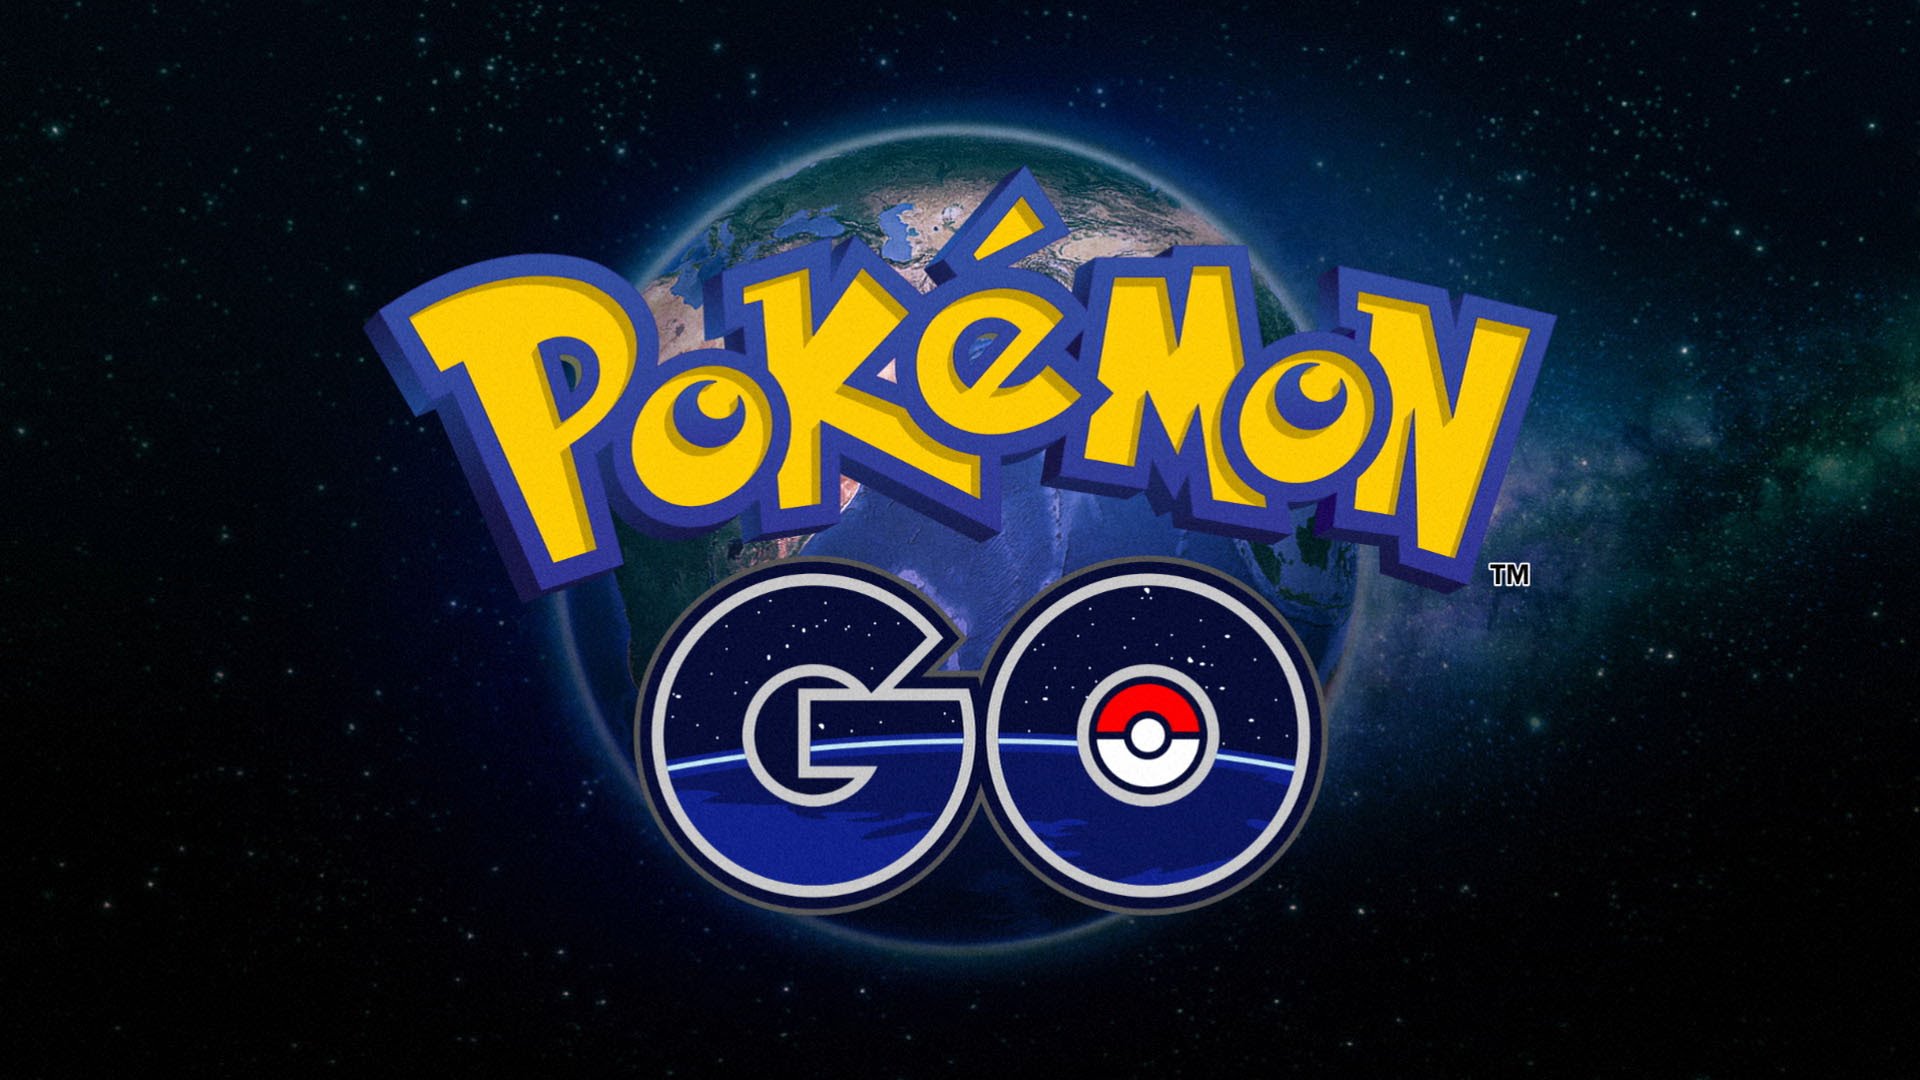 Site calcula suas chances derrotar donos de ginásios em Pokémon GO -  TecMundo